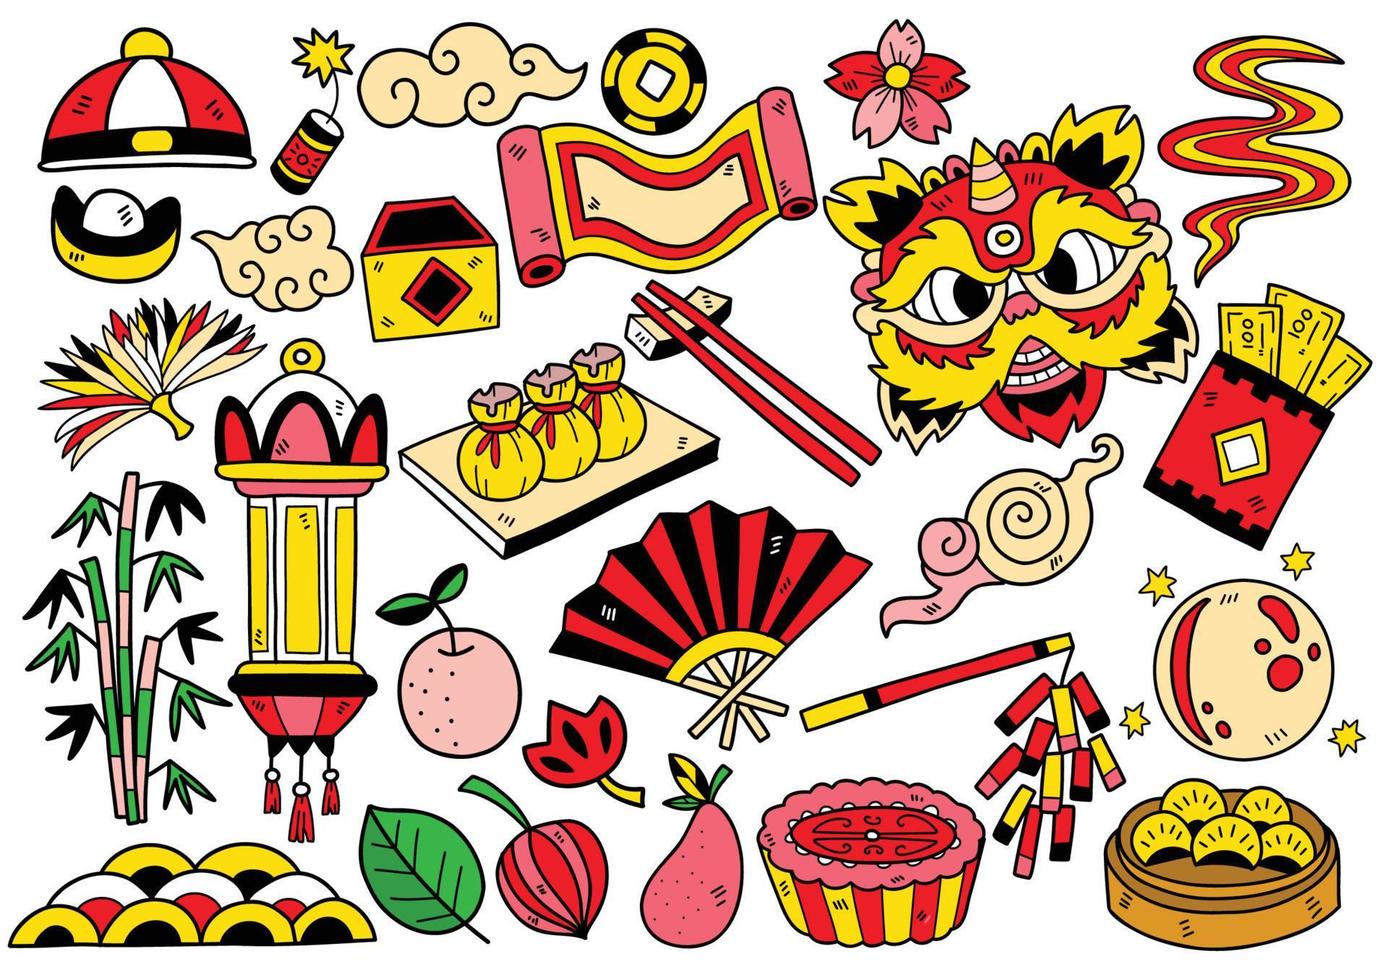 illustrazione di vettore degli oggetti di doodle della porcellana di stile disegnato a mano per il banner